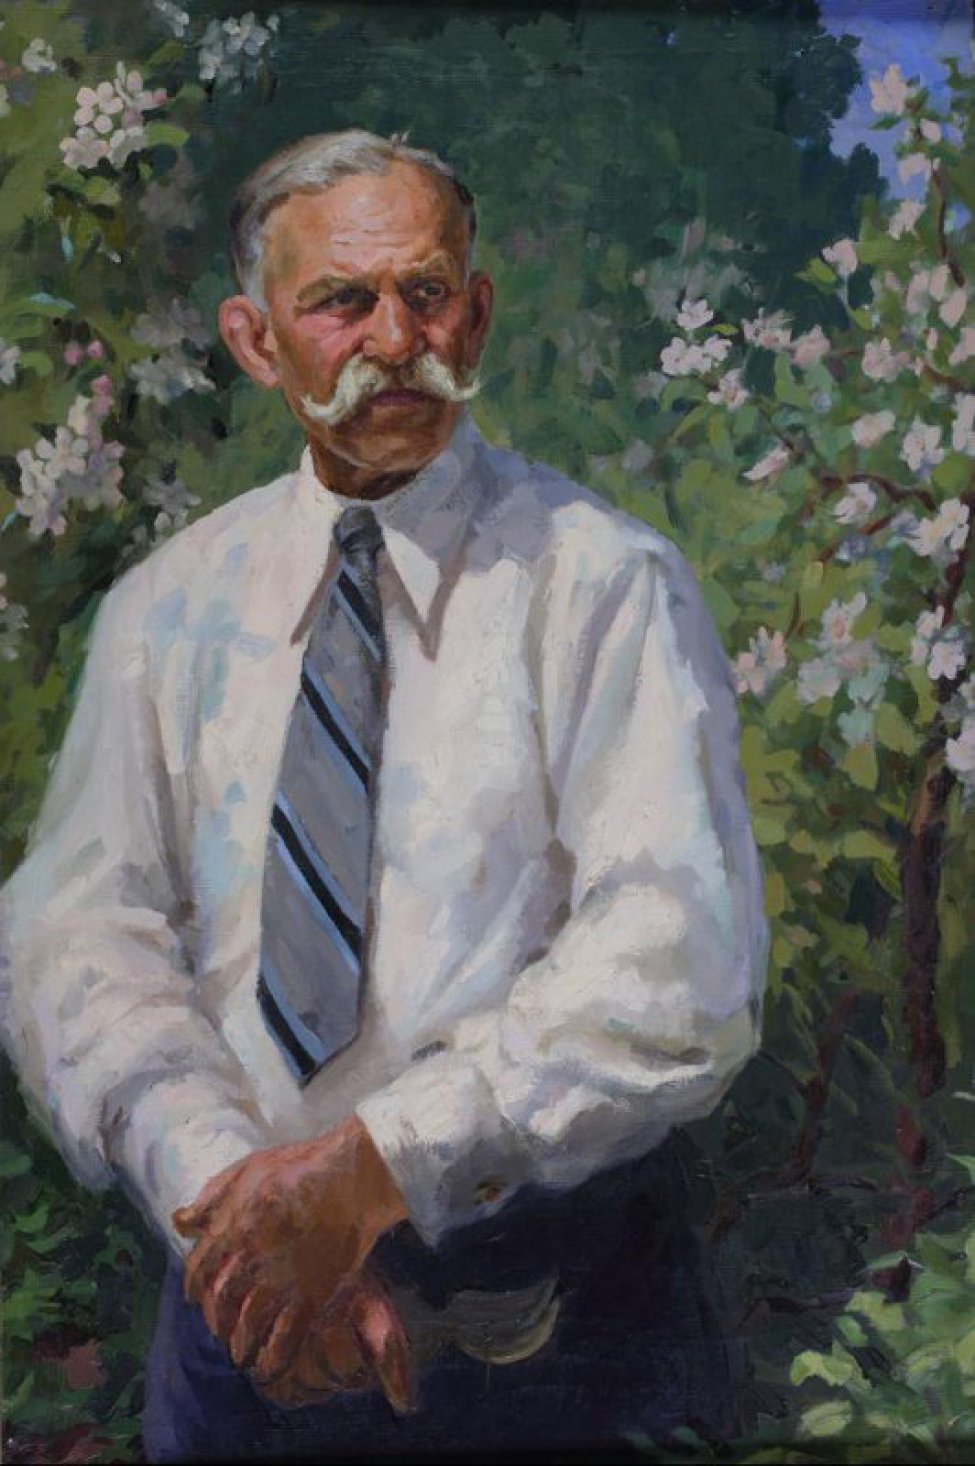 Дано победренное изображение стоящего среди цветущих яблонь пожилого человека с пышными седыми усами, в светлой рубашке с полосатым галстуком. В руках - садовые ножницы.